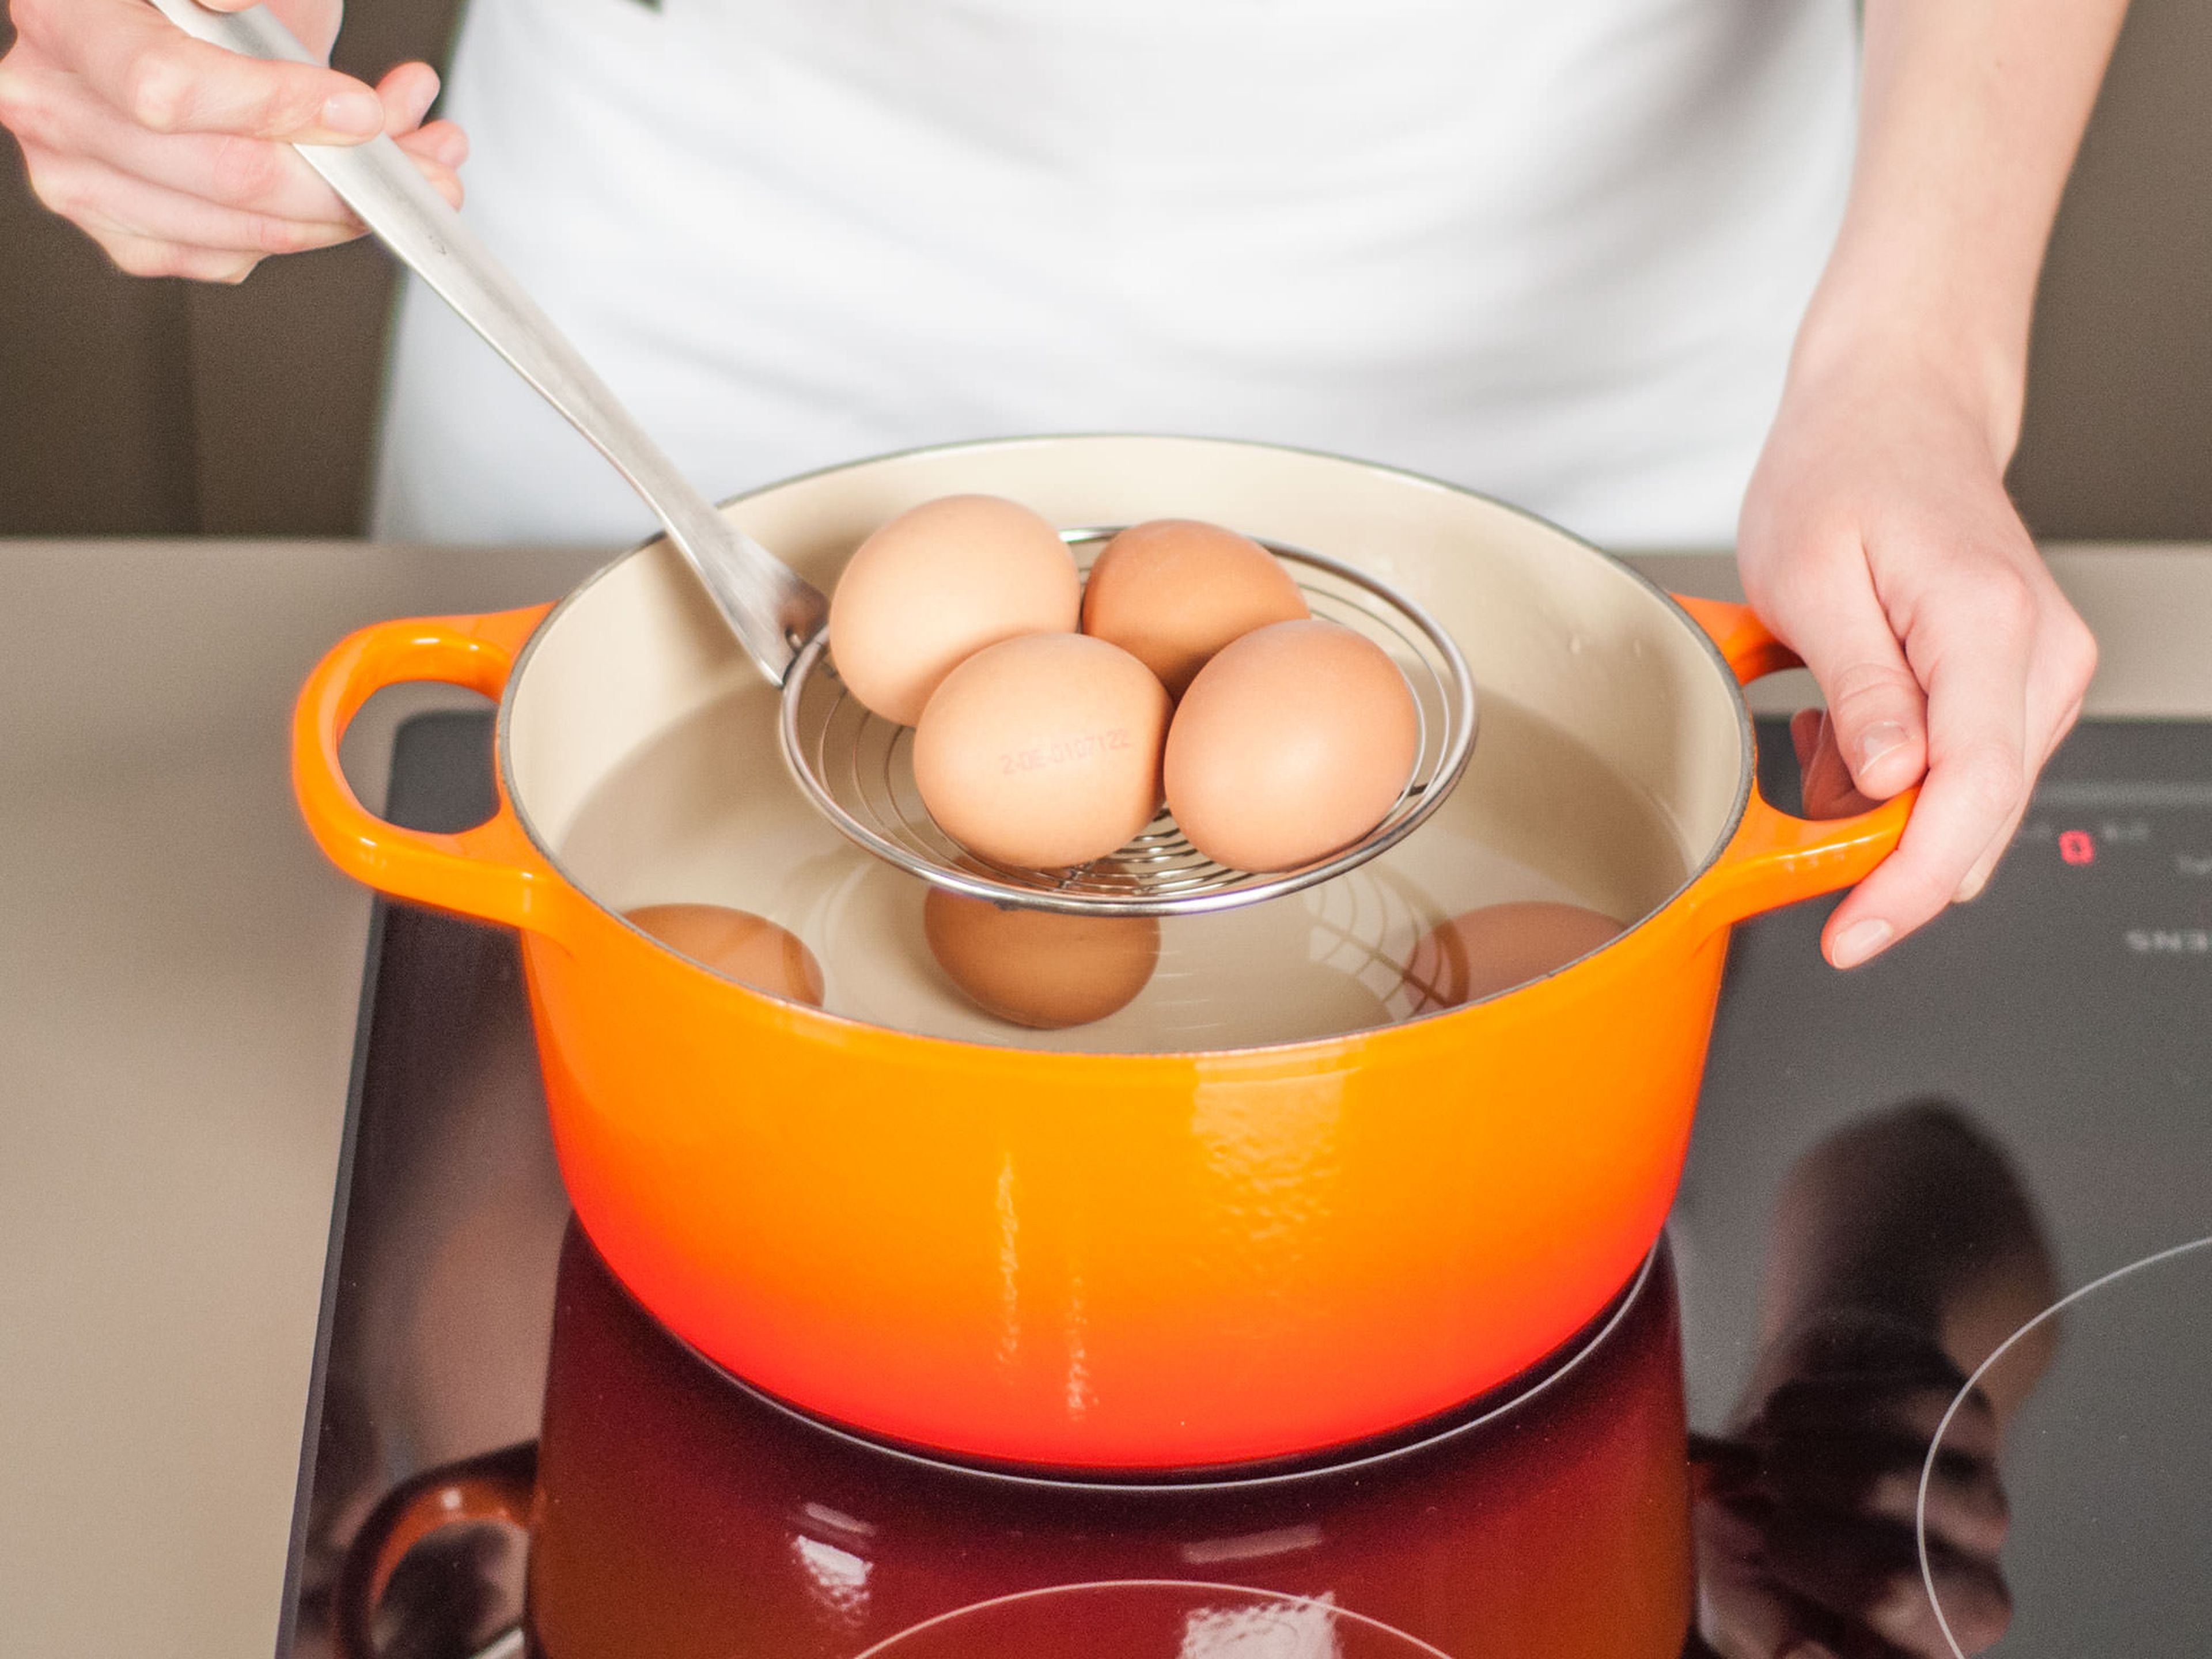 Zwei Drittel der Eier in einen Topf geben und mit kaltem Wasser bedecken. Zum Kochen bringen und ca. 7 – 8 Min. garen. Aus dem Topf nehmen und sofort in ein Eisbad legen oder unter kaltem Wasser abschrecken. Eier schälen, sobald sie kalt genug zum Anfassen sind.